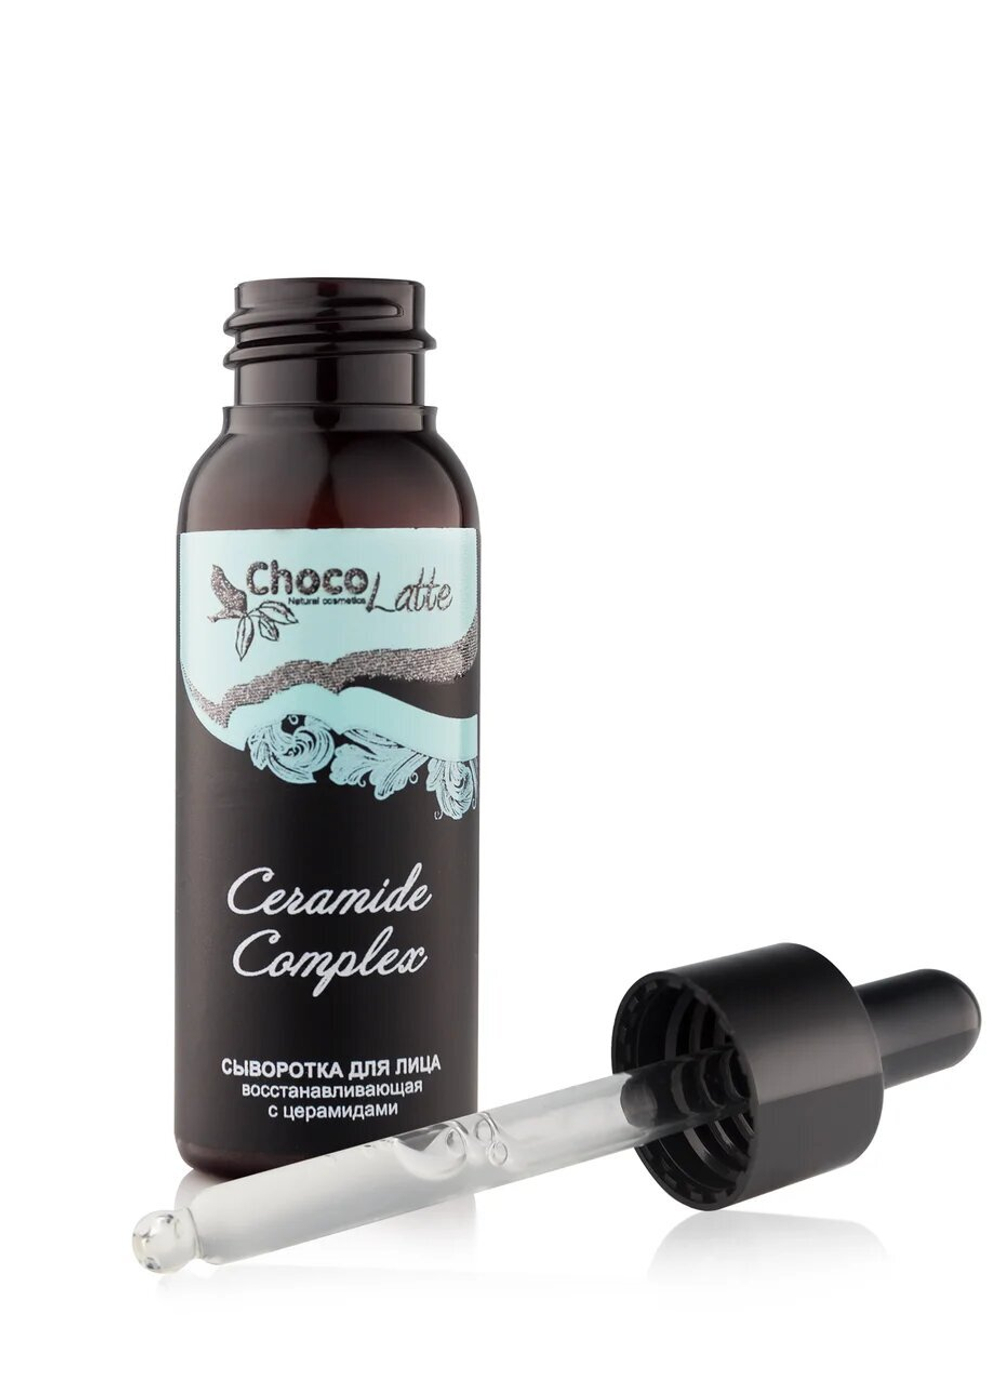 Сыворотка (oil-free) для лица CERAMIDE COMPLEX восстанавливающая с церамидами, TM ChocoLatte